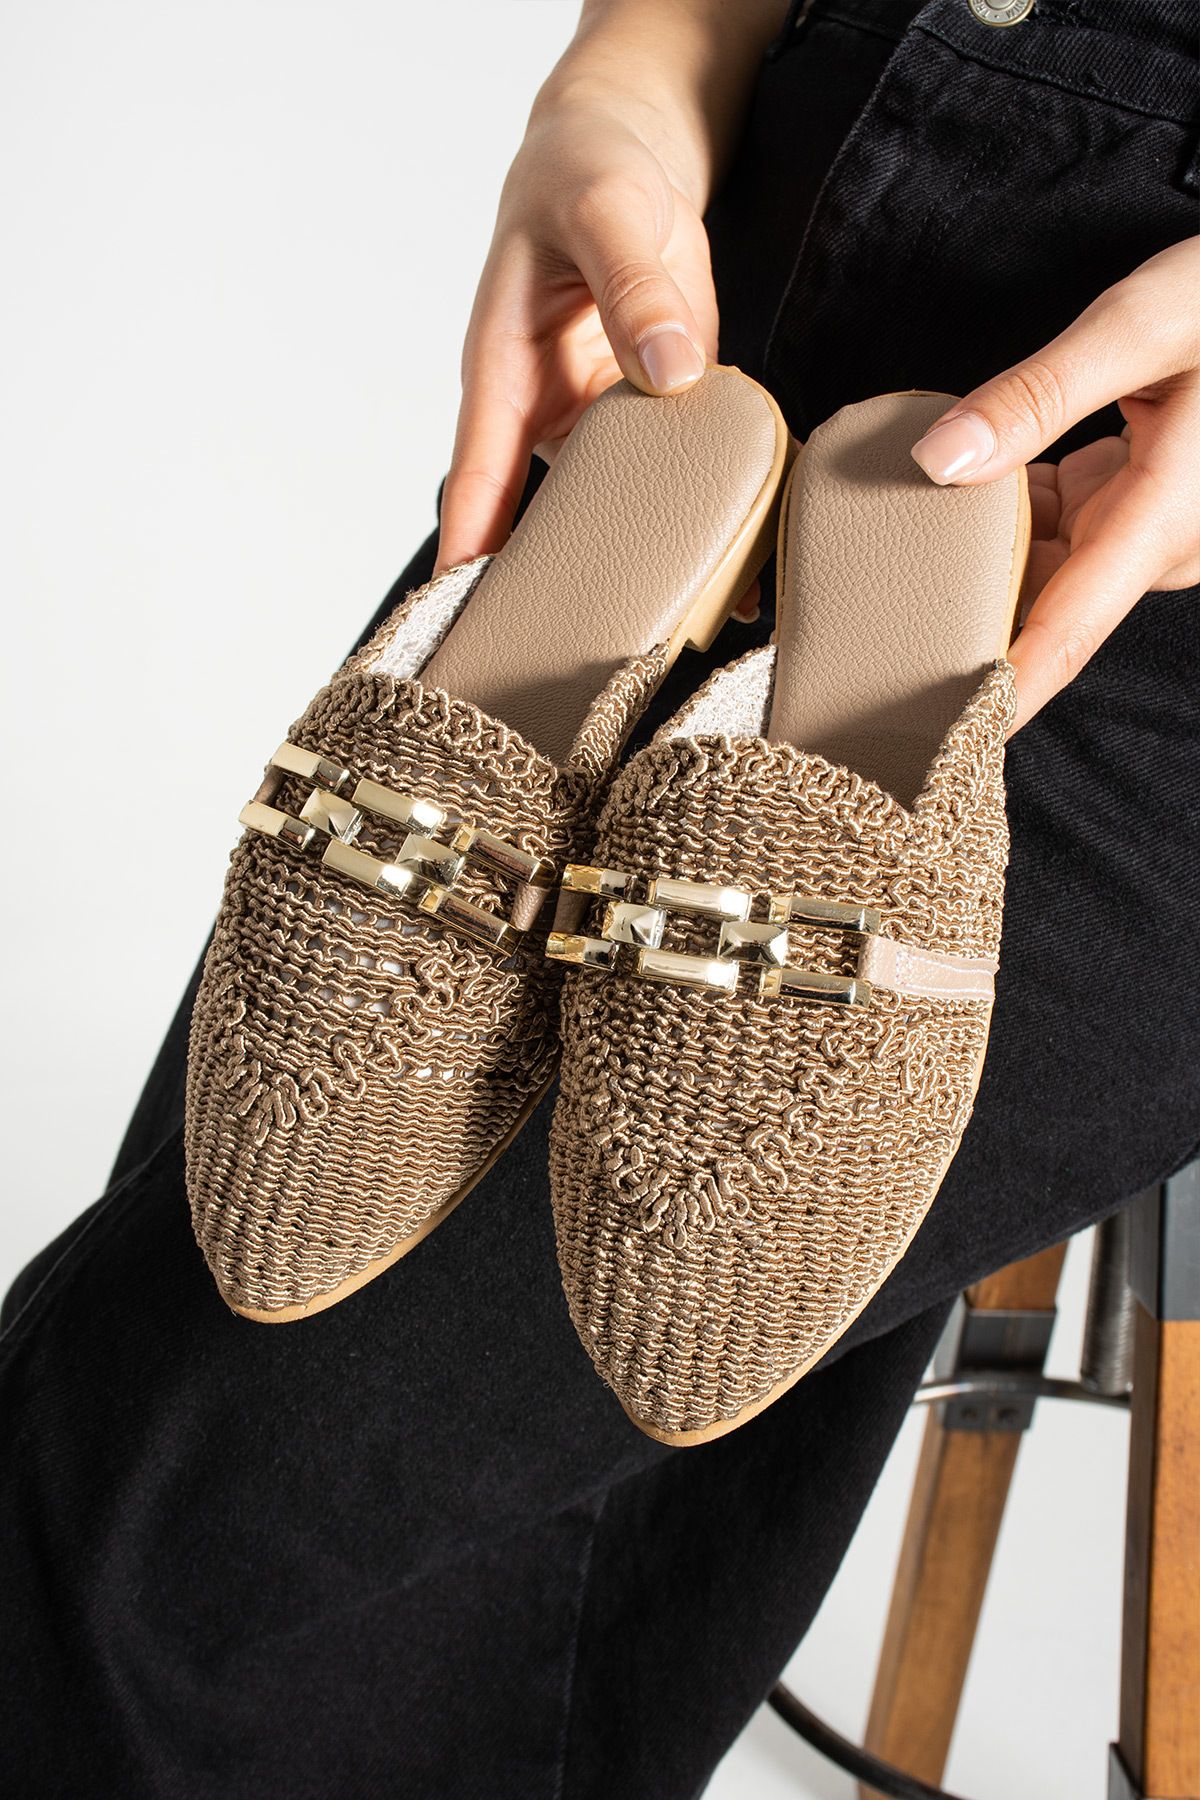 star shoes Kadın Zincirli Terlik Önü Kapalı Hasır Dantel Örme  Günlük Sandalet Terlik